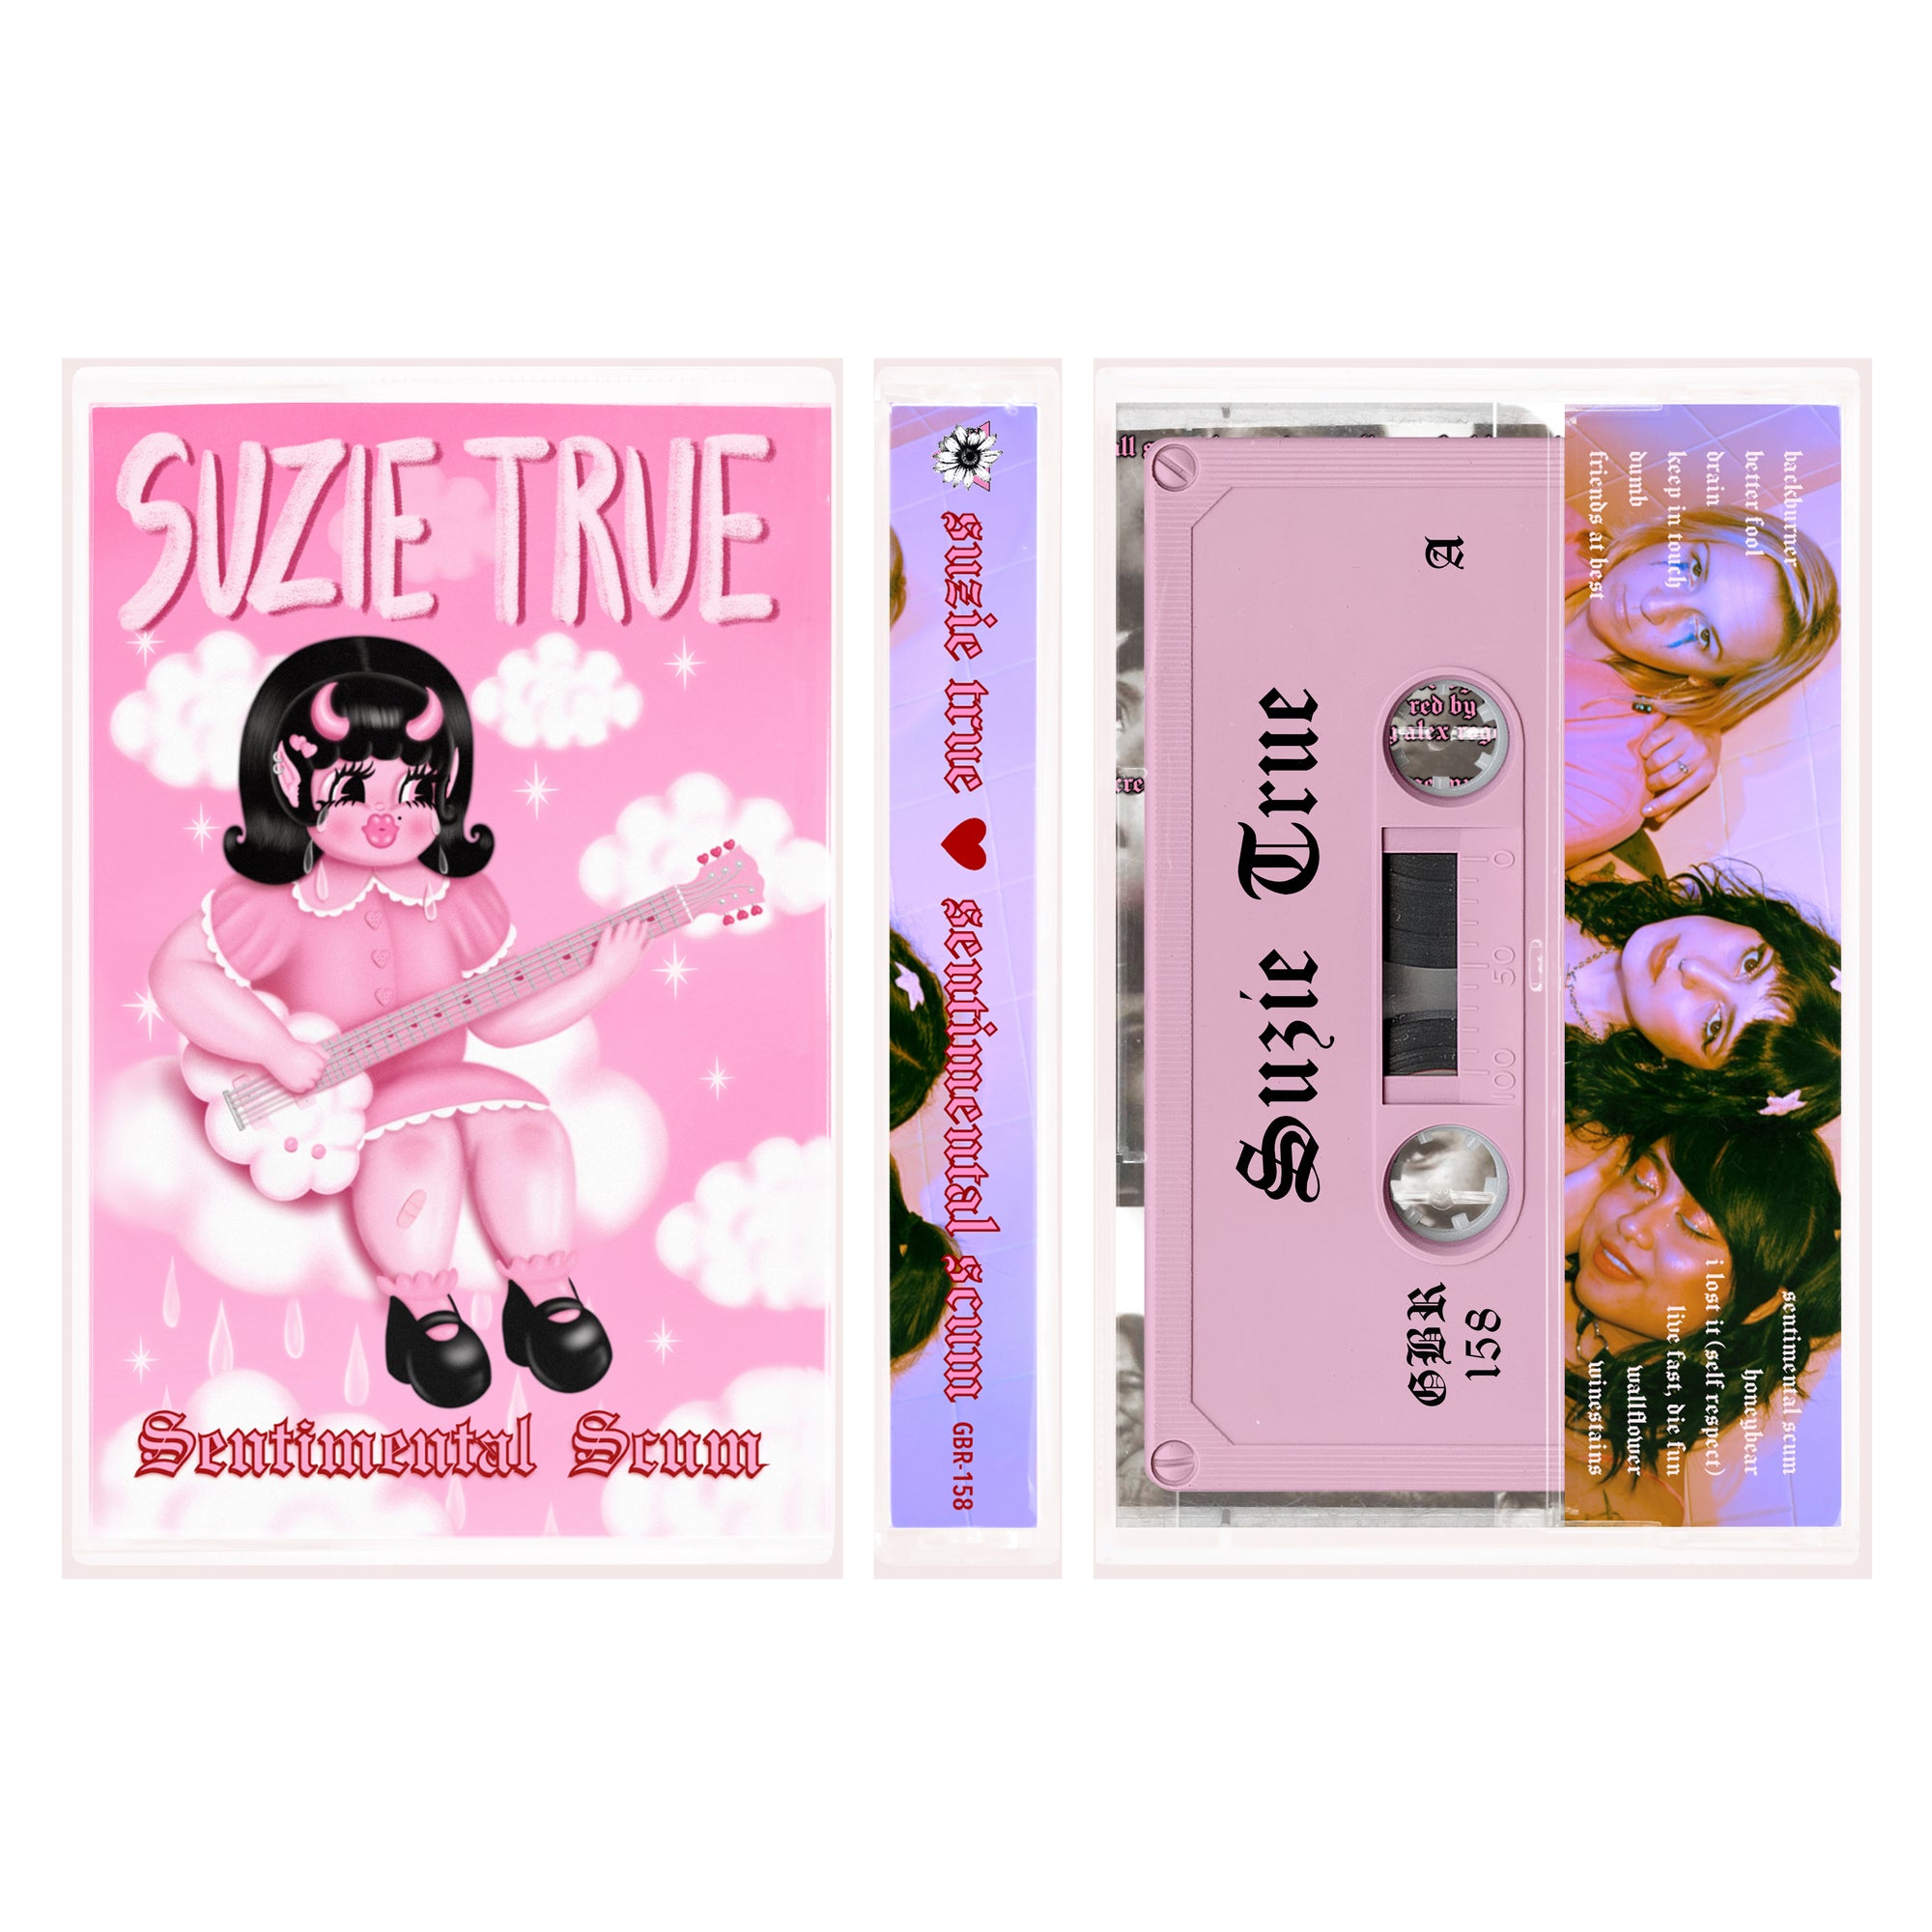 Suzie True "Sentimental Scum"